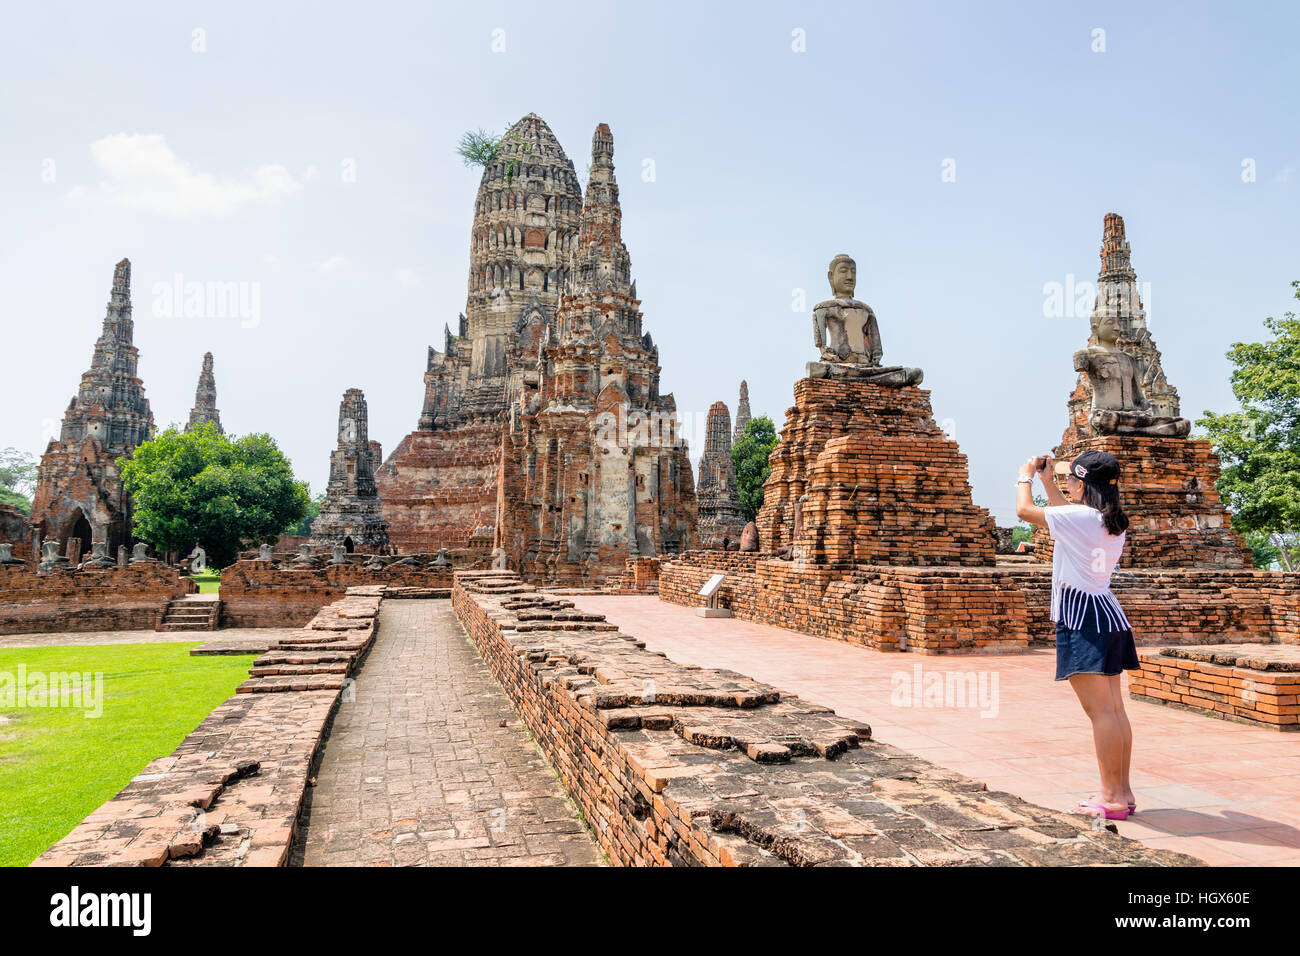 Turista adolescente tome una foto antigua Pagoda de Wat Chaiwatthanaram templo budista es famosa atracción turística religión en Ayutthaya histórico Foto de stock